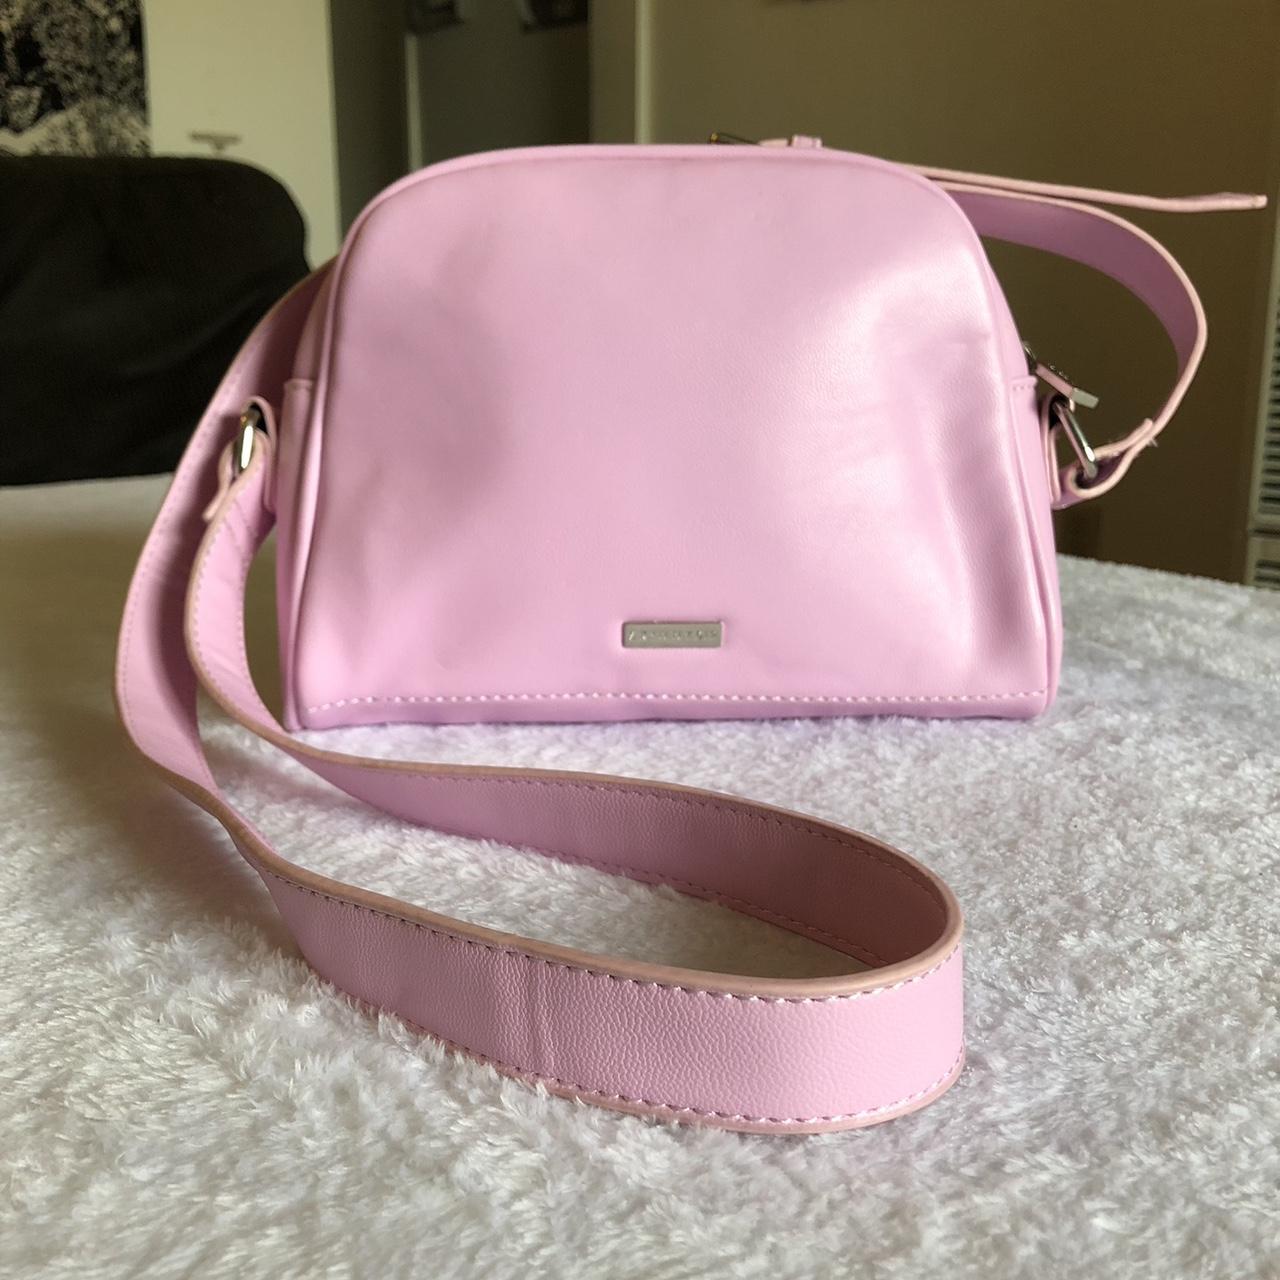 Skinnydip Women's Pink Bag (2)